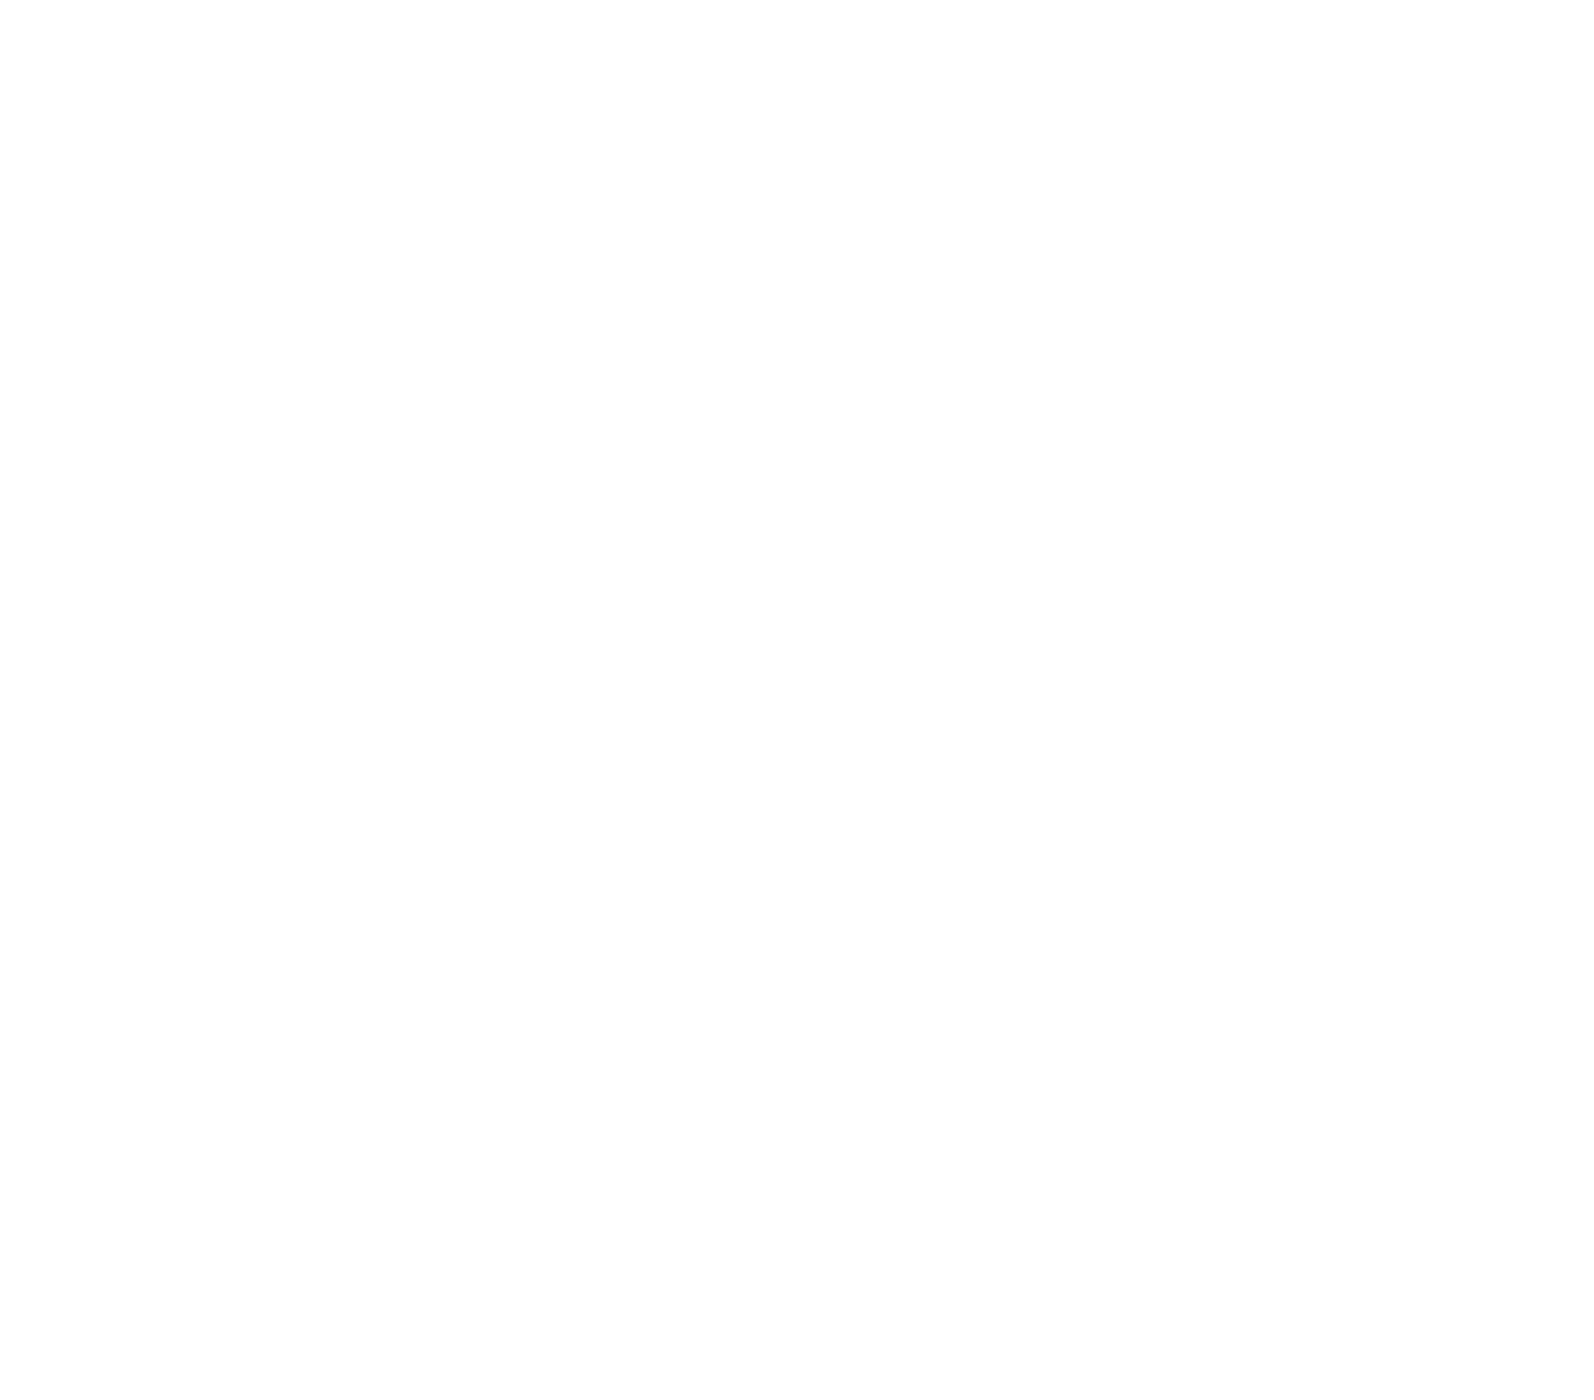 Shentel logo for dark backgrounds (transparent PNG)